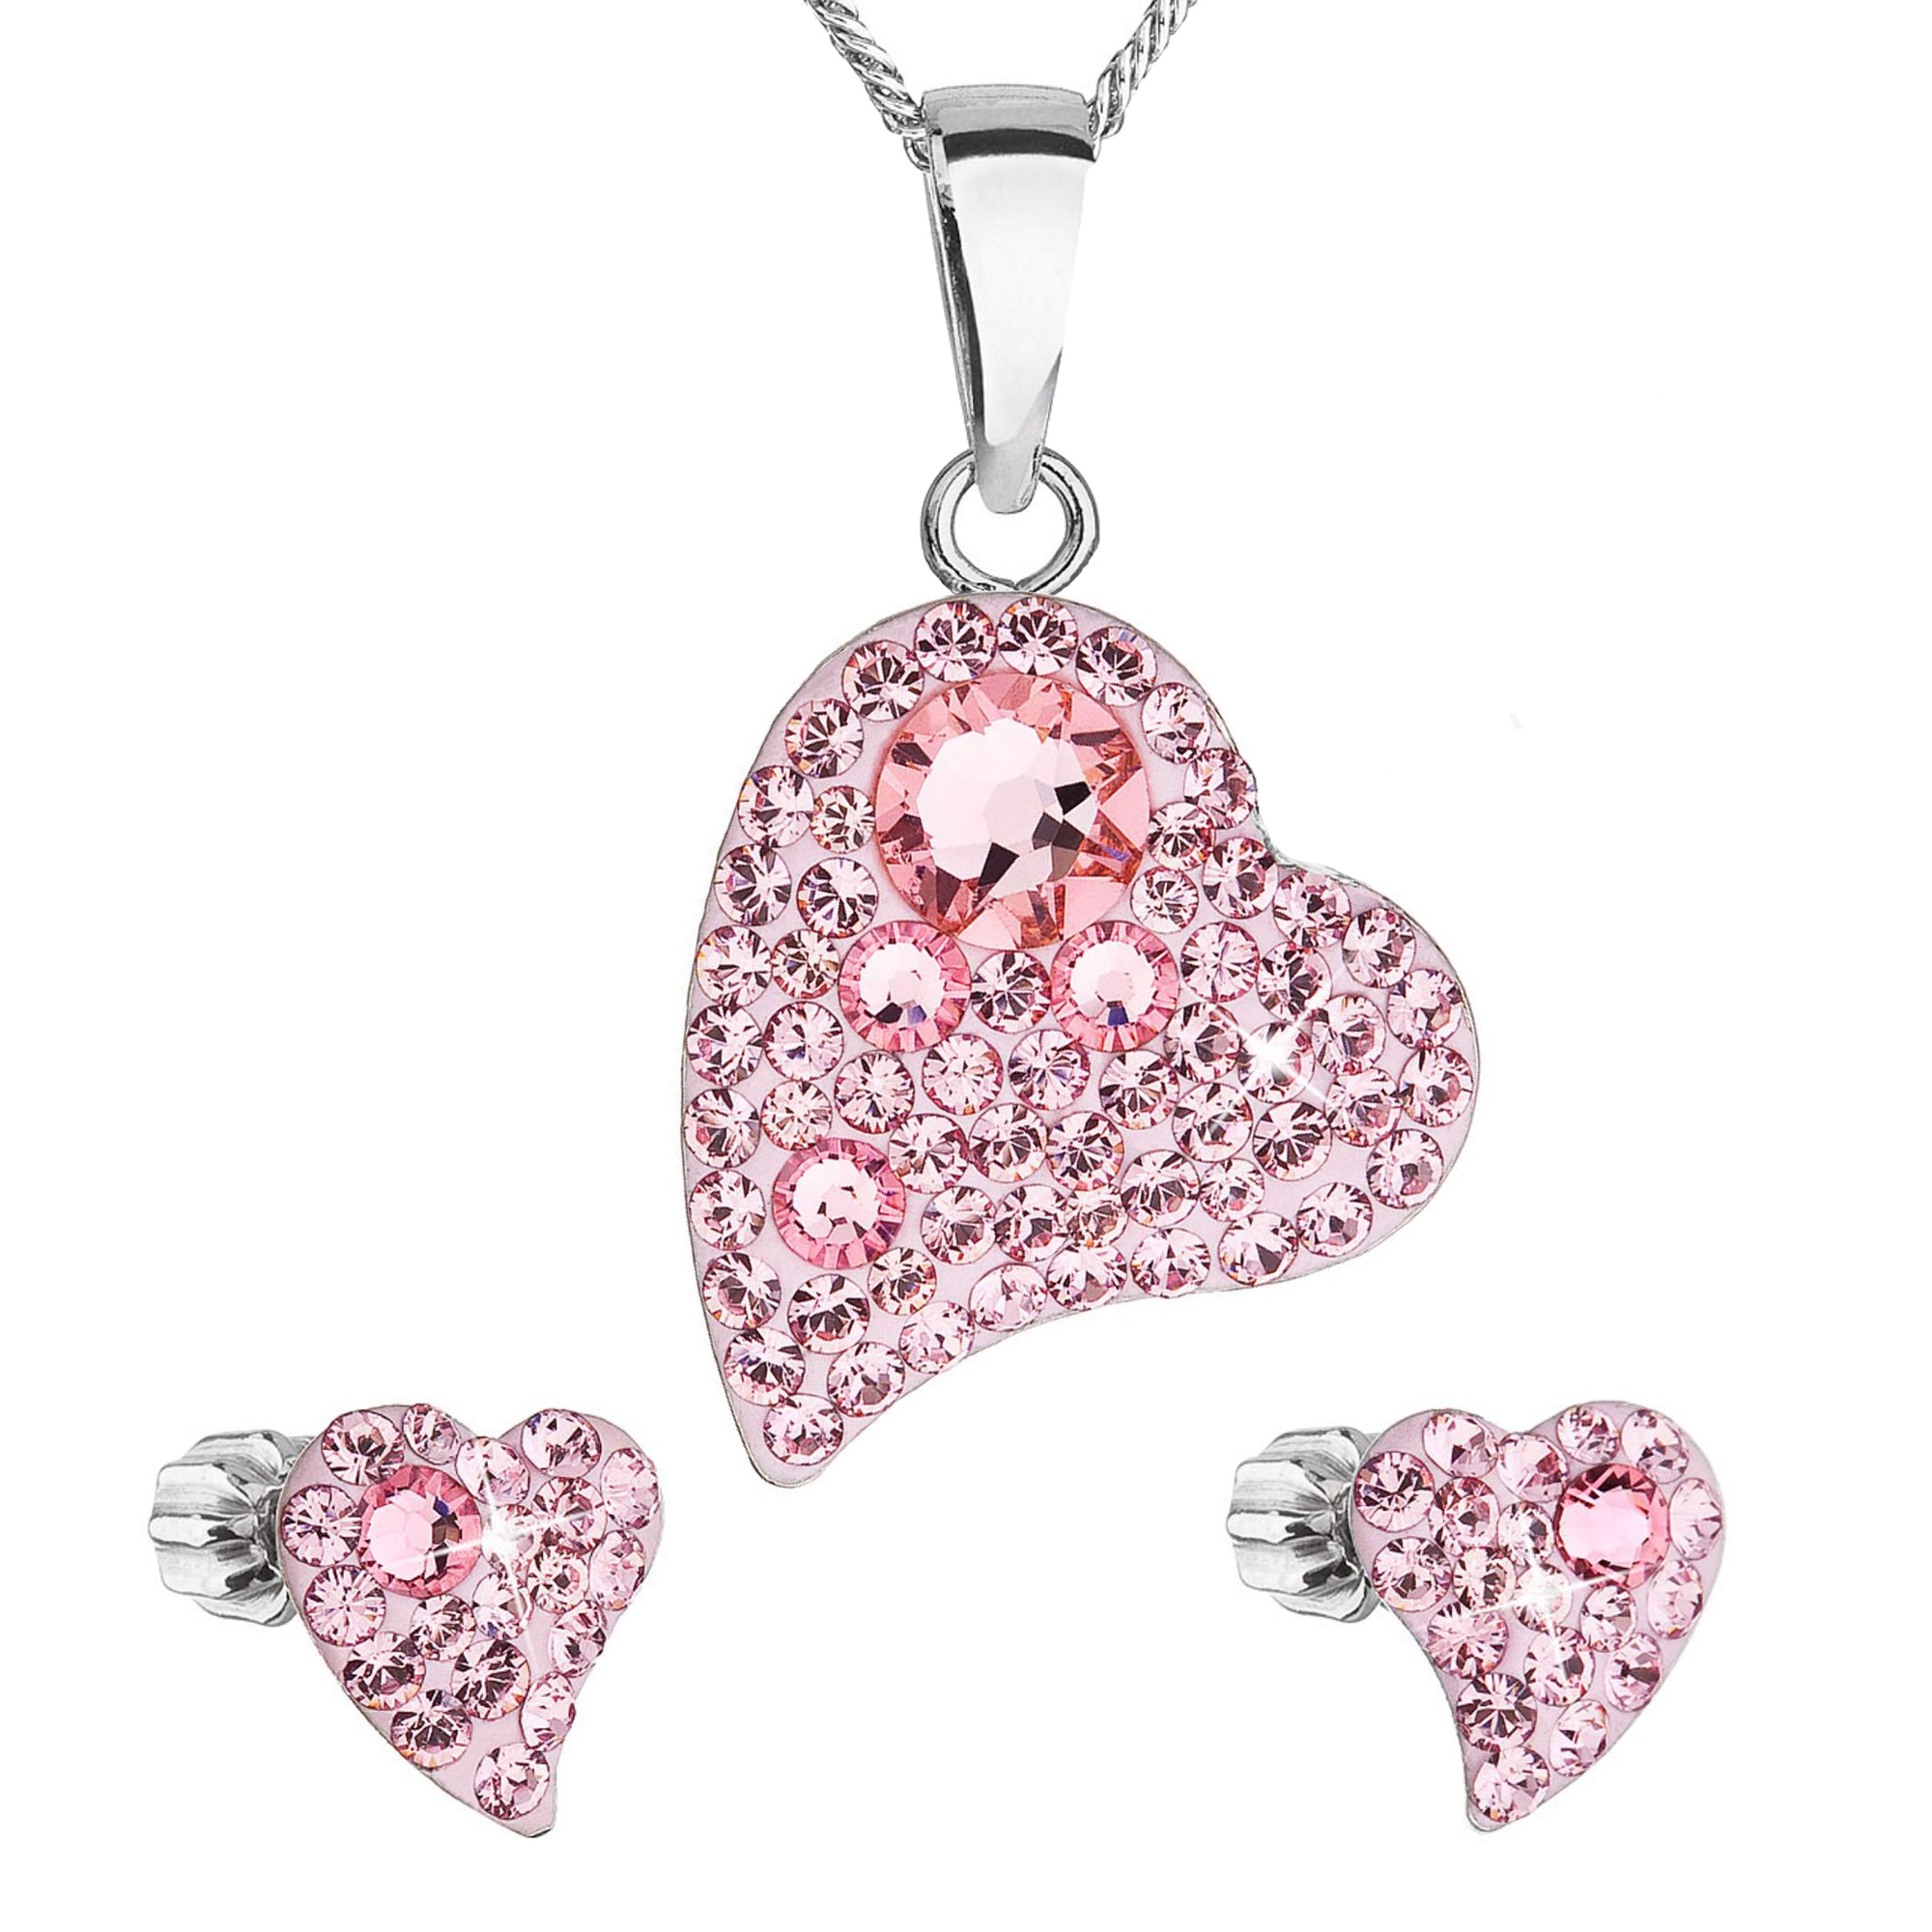 Evolution Group Sada šperků s krystaly Swarovski náušnice a přívěsek růžová srdce 39170.3 light rose